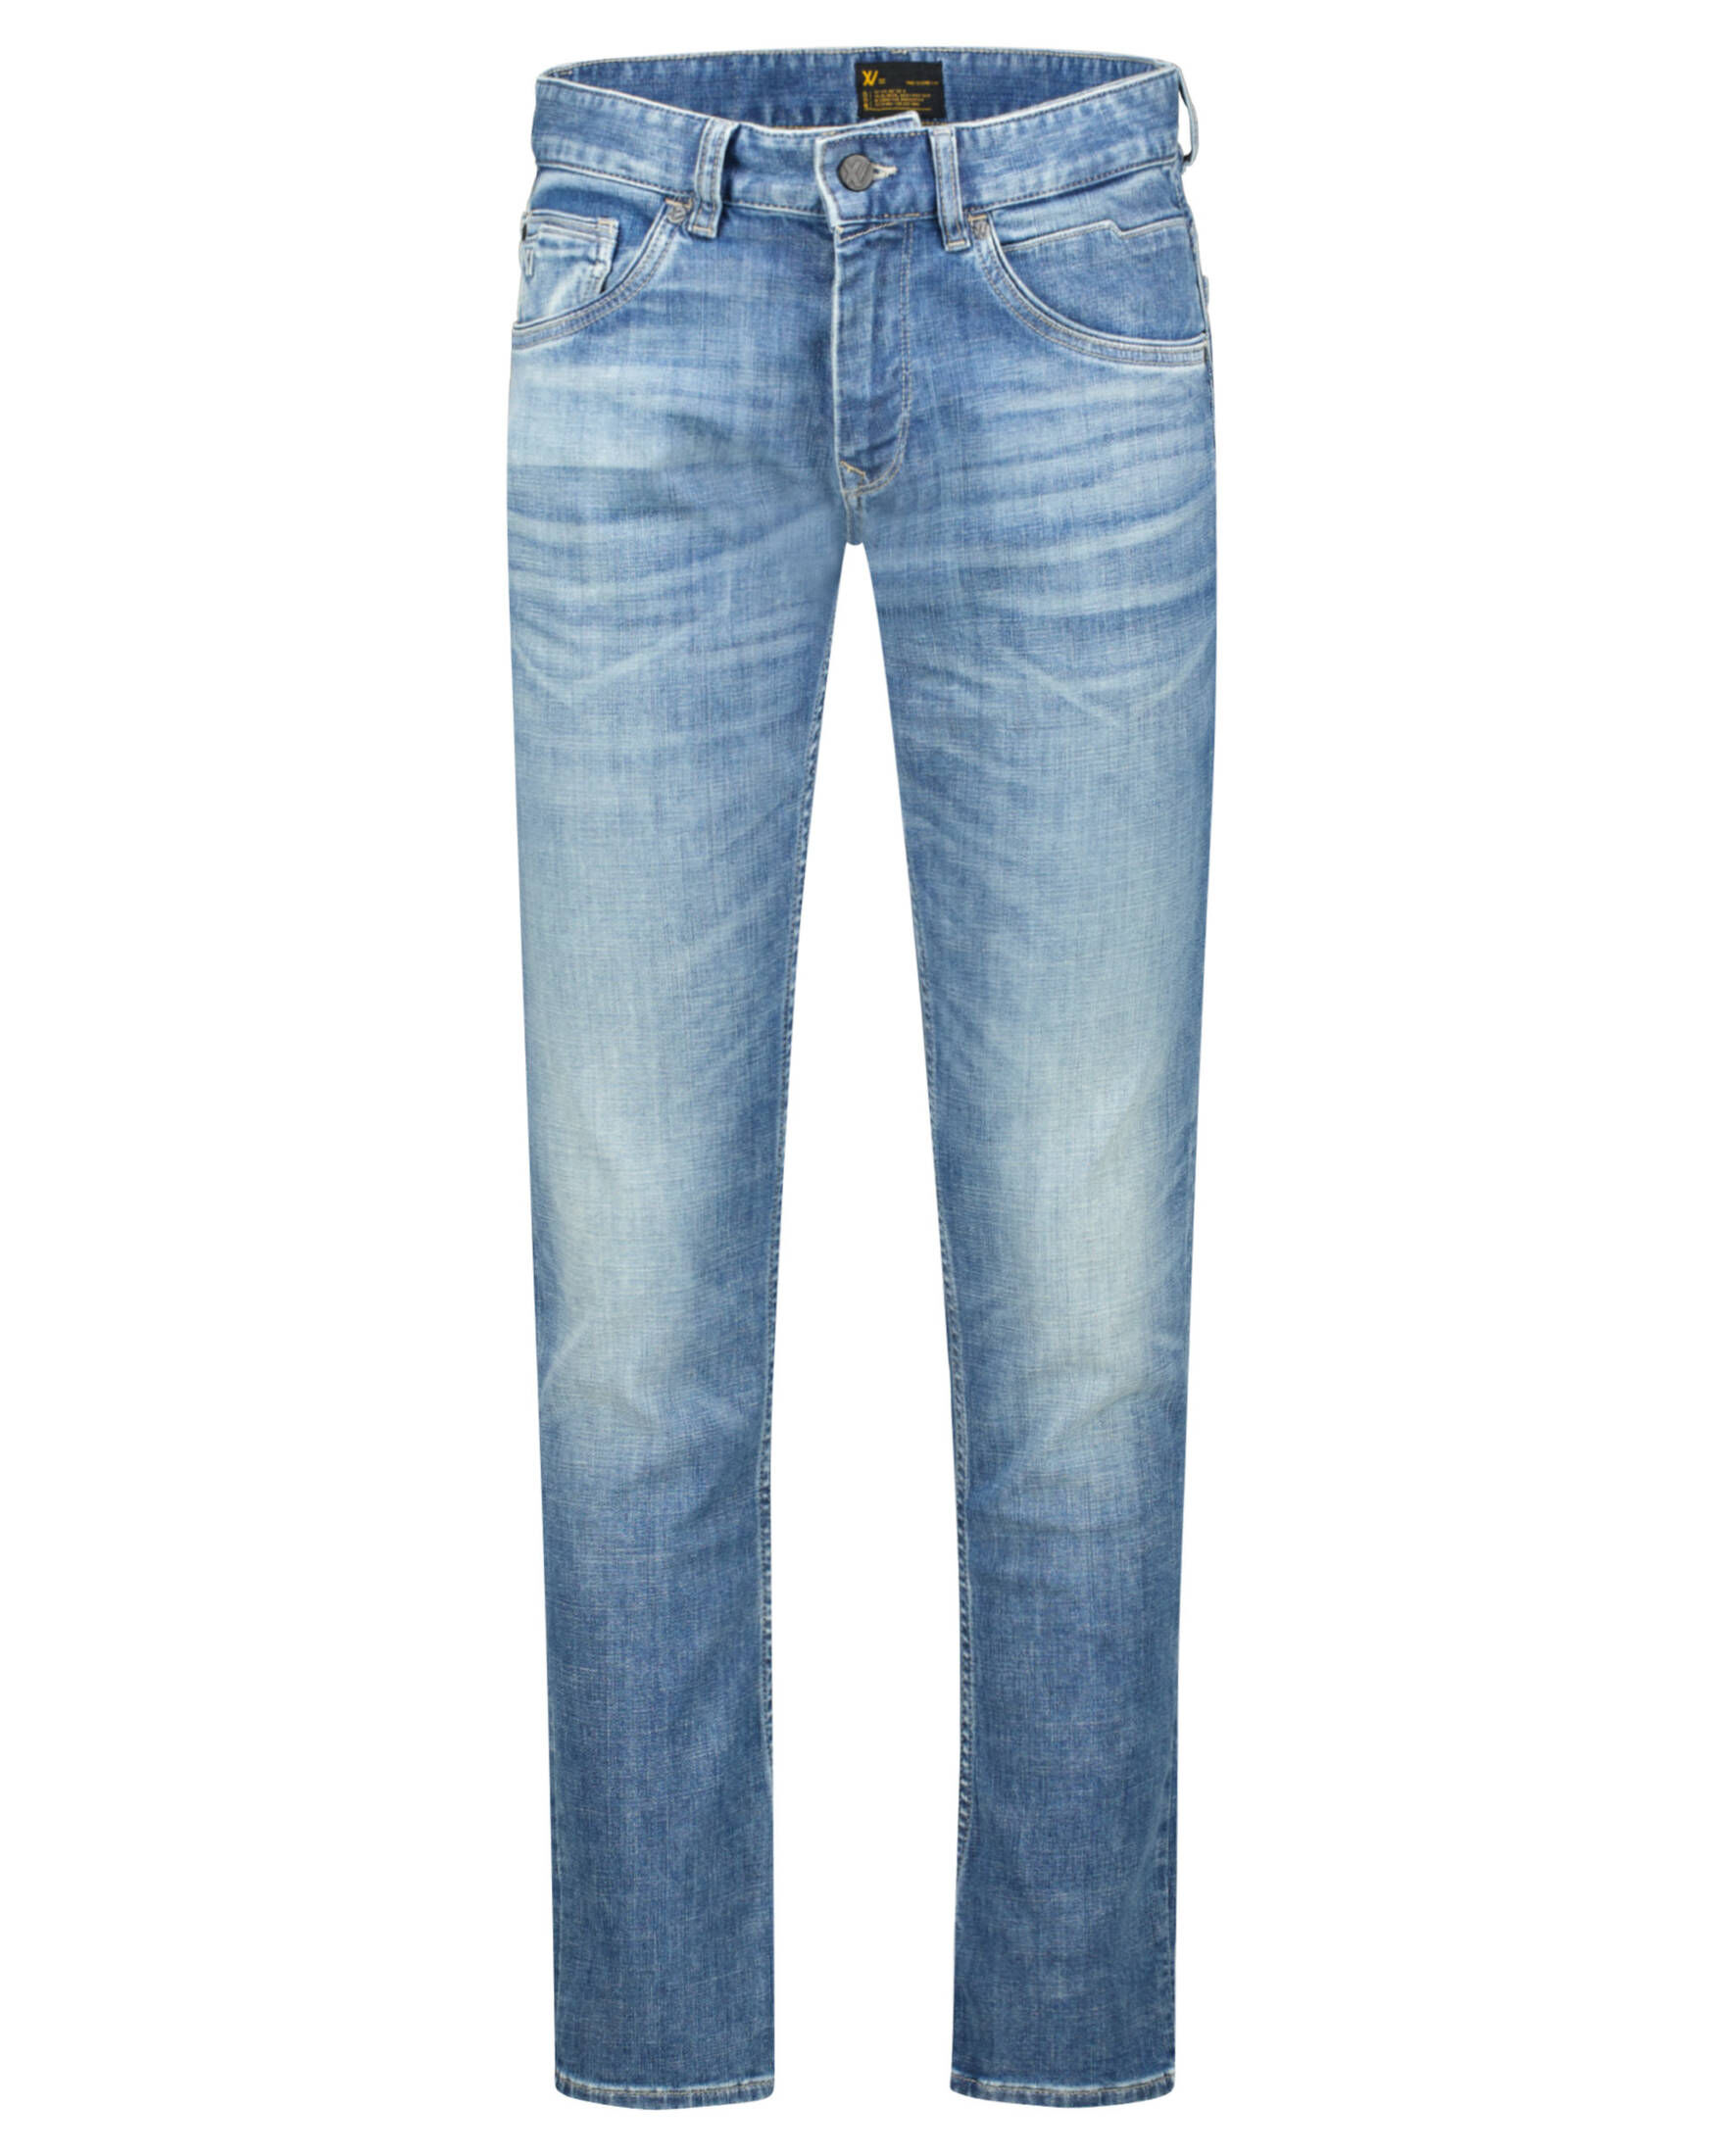 XV | PME Slim Herren DENIM engelhorn BLUE BRIGHT kaufen Fit AIR Legend Jeans